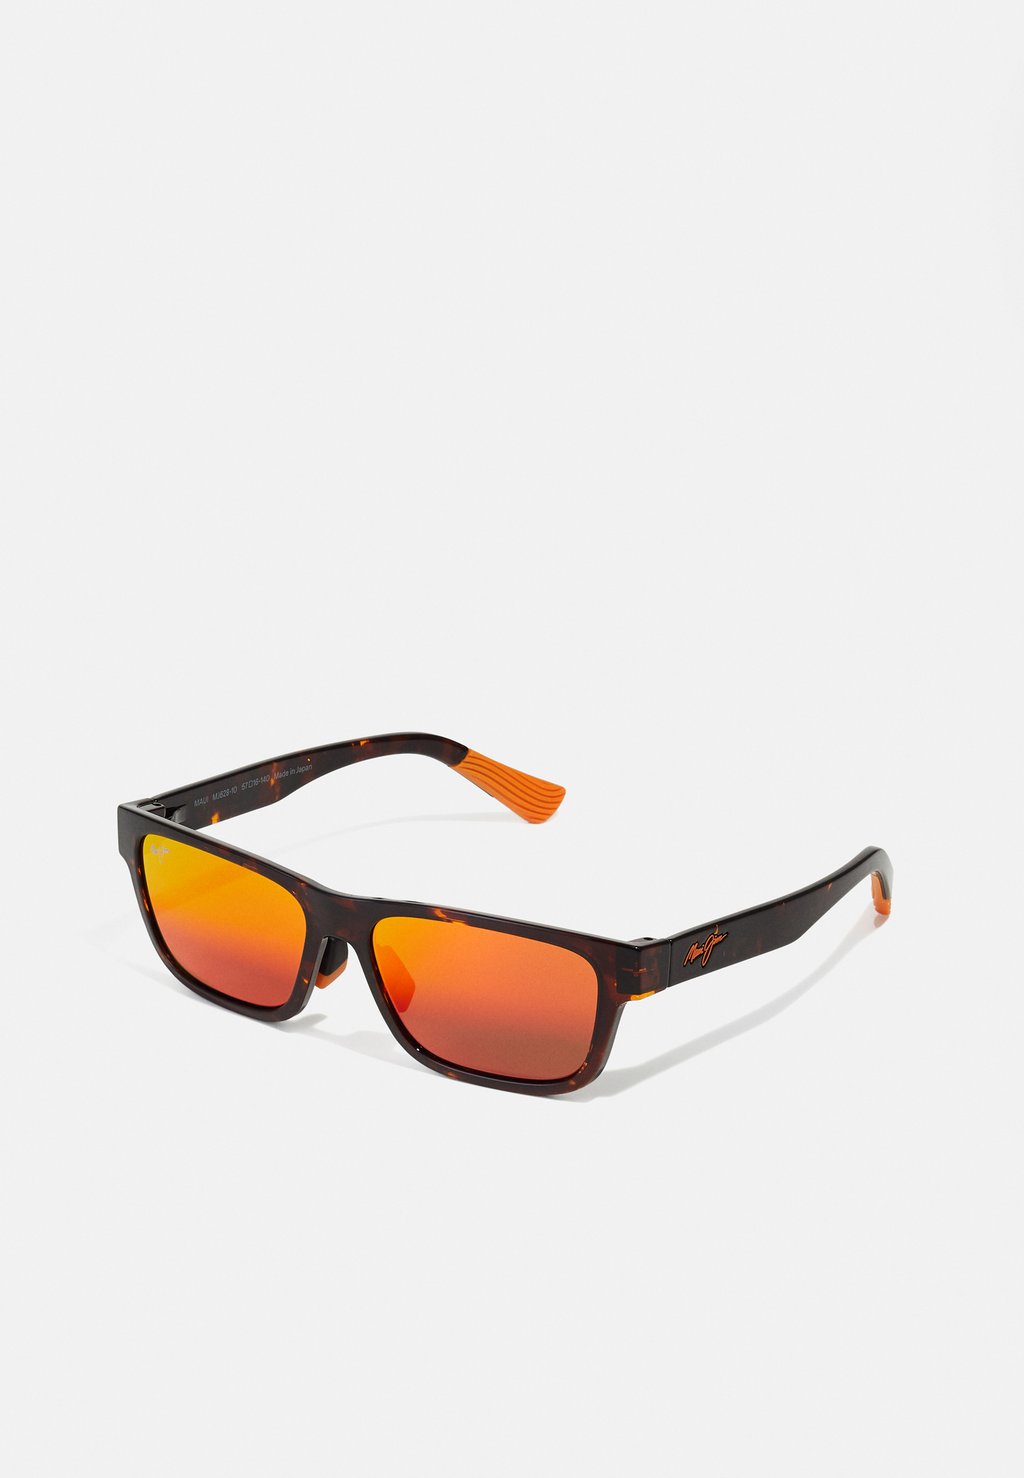 Солнцезащитные очки Maui Jim, цвет havana/red